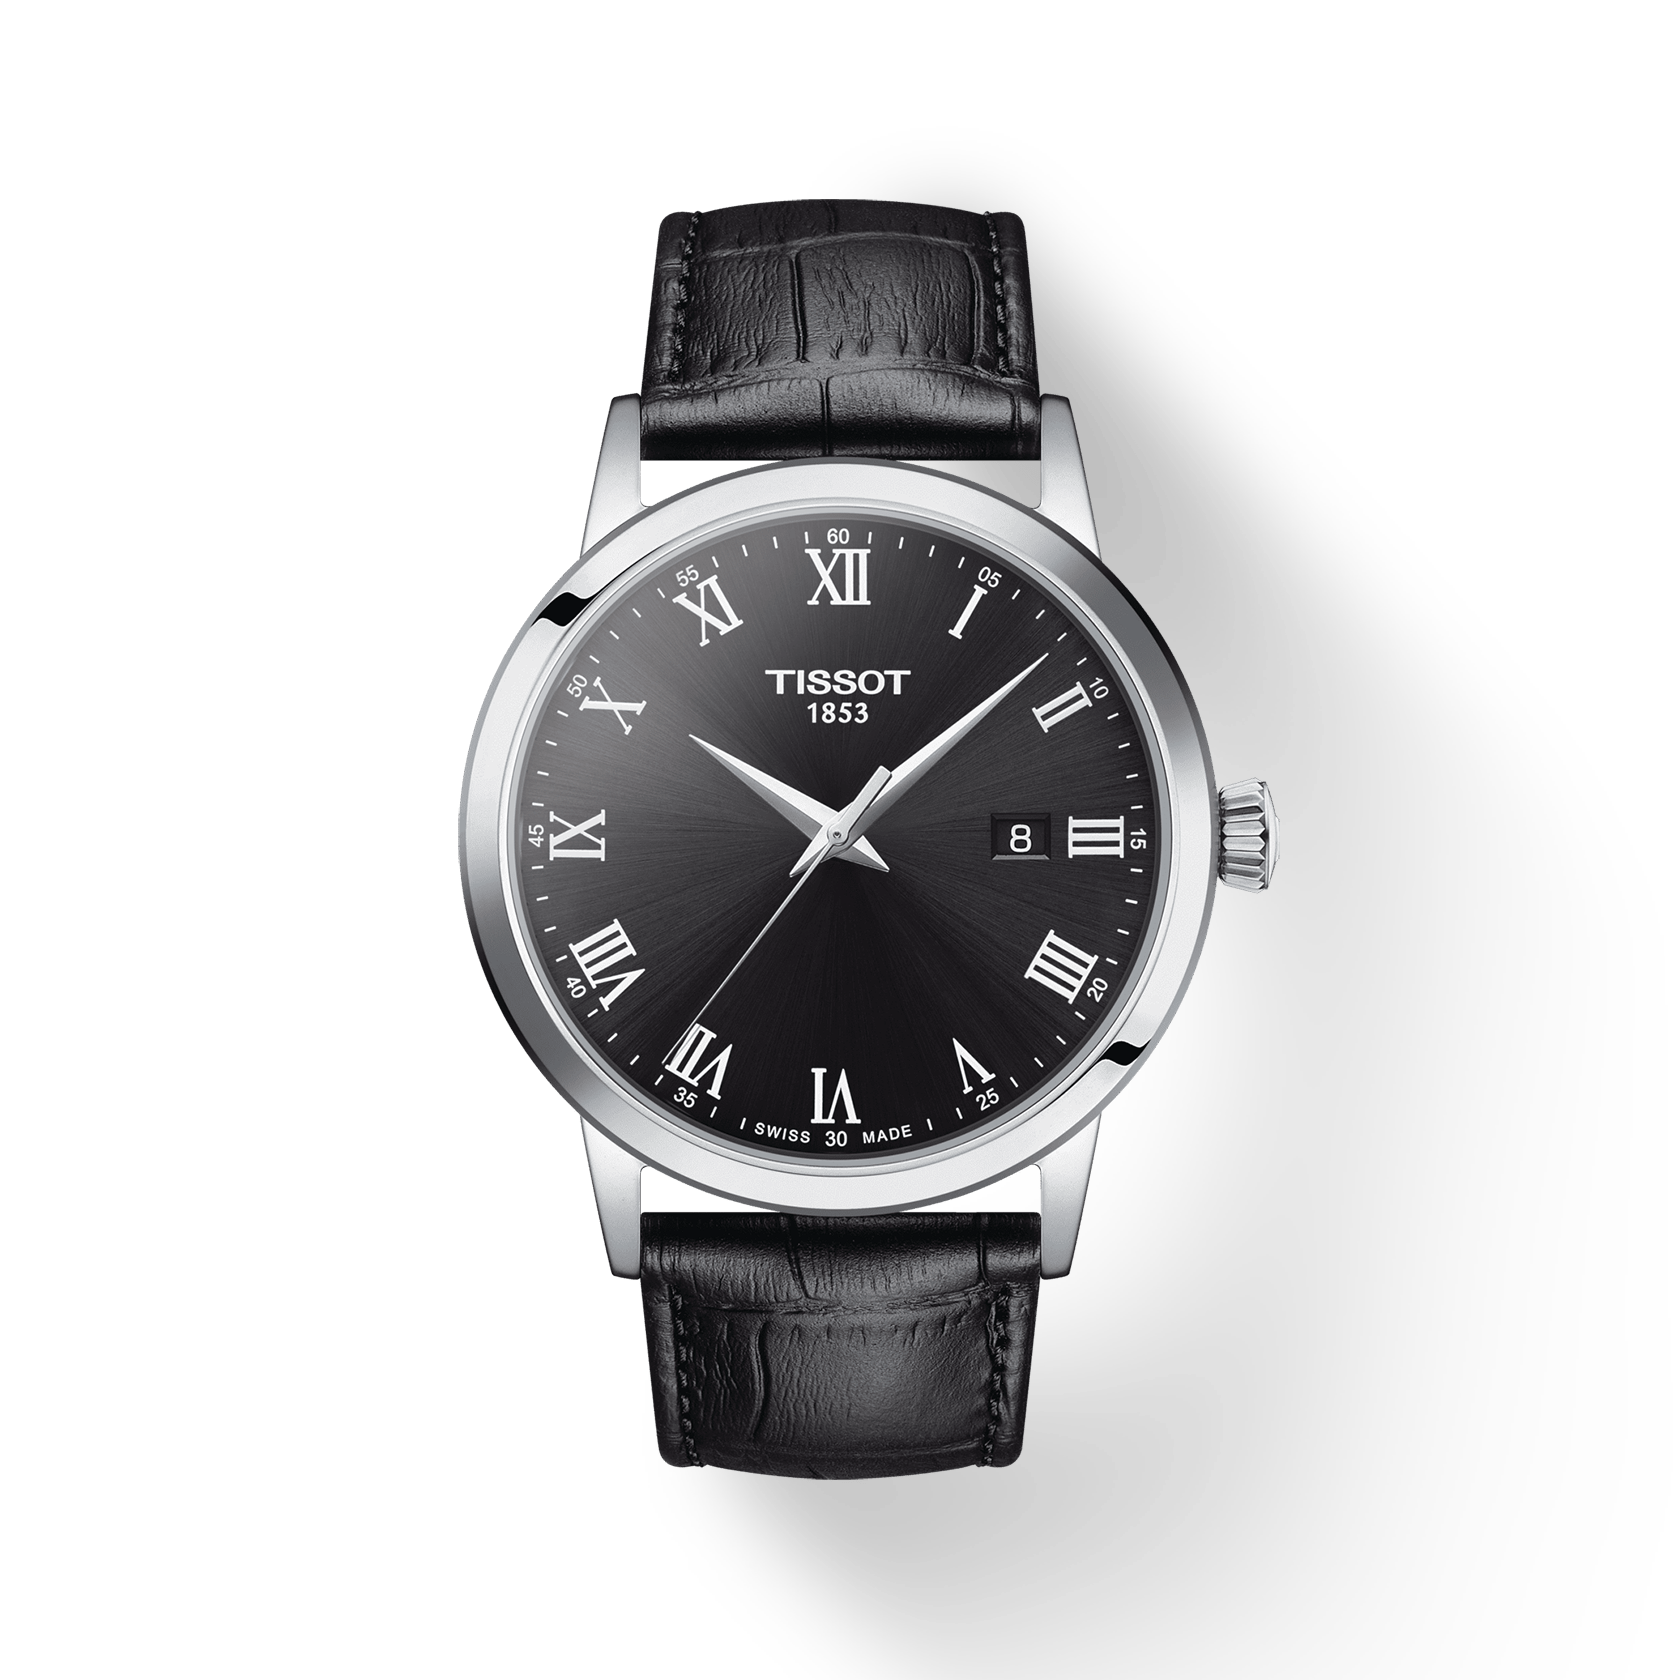 El diseño sencillo y atemporal de los relojes Tissot Couturier.